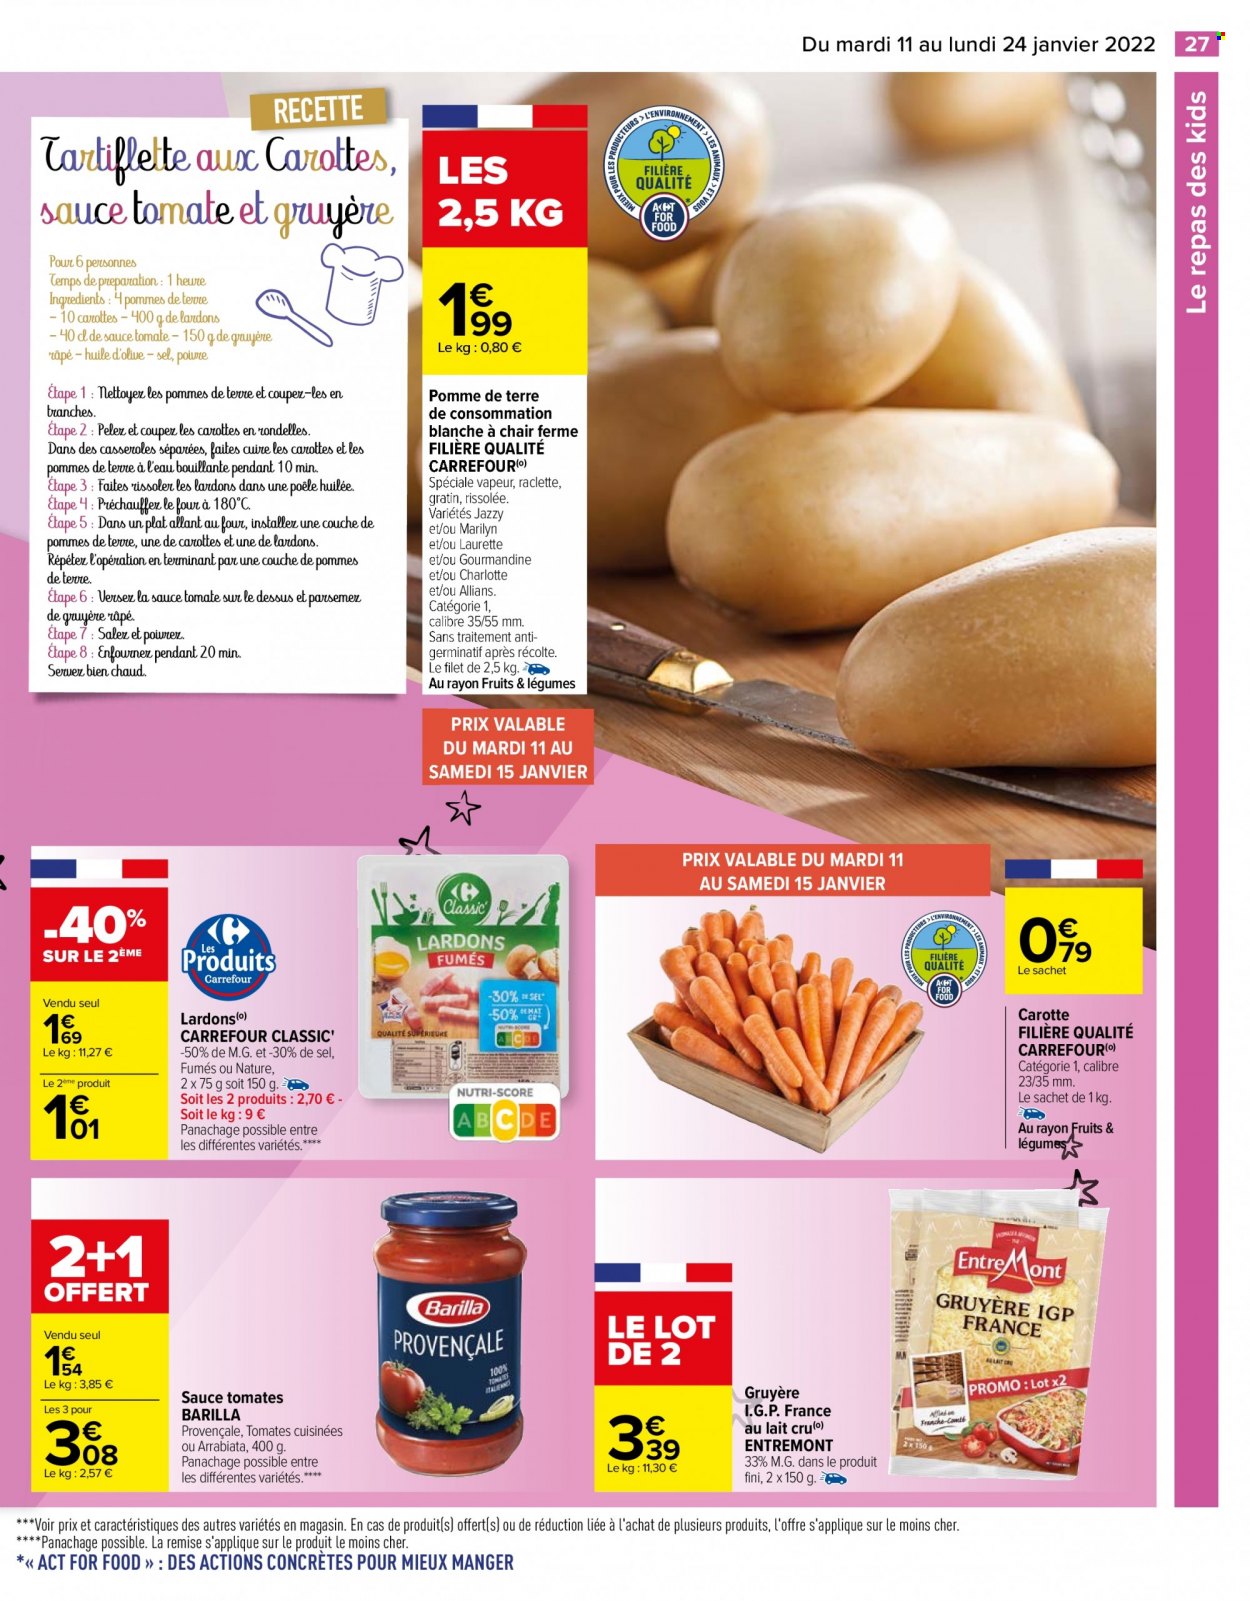 thumbnail - Catalogue Carrefour Hypermarchés - 11/01/2022 - 24/01/2022 - Produits soldés - carotte, pommes de terre, lardons, gruyère, sauce tomate, Barilla. Page 27.